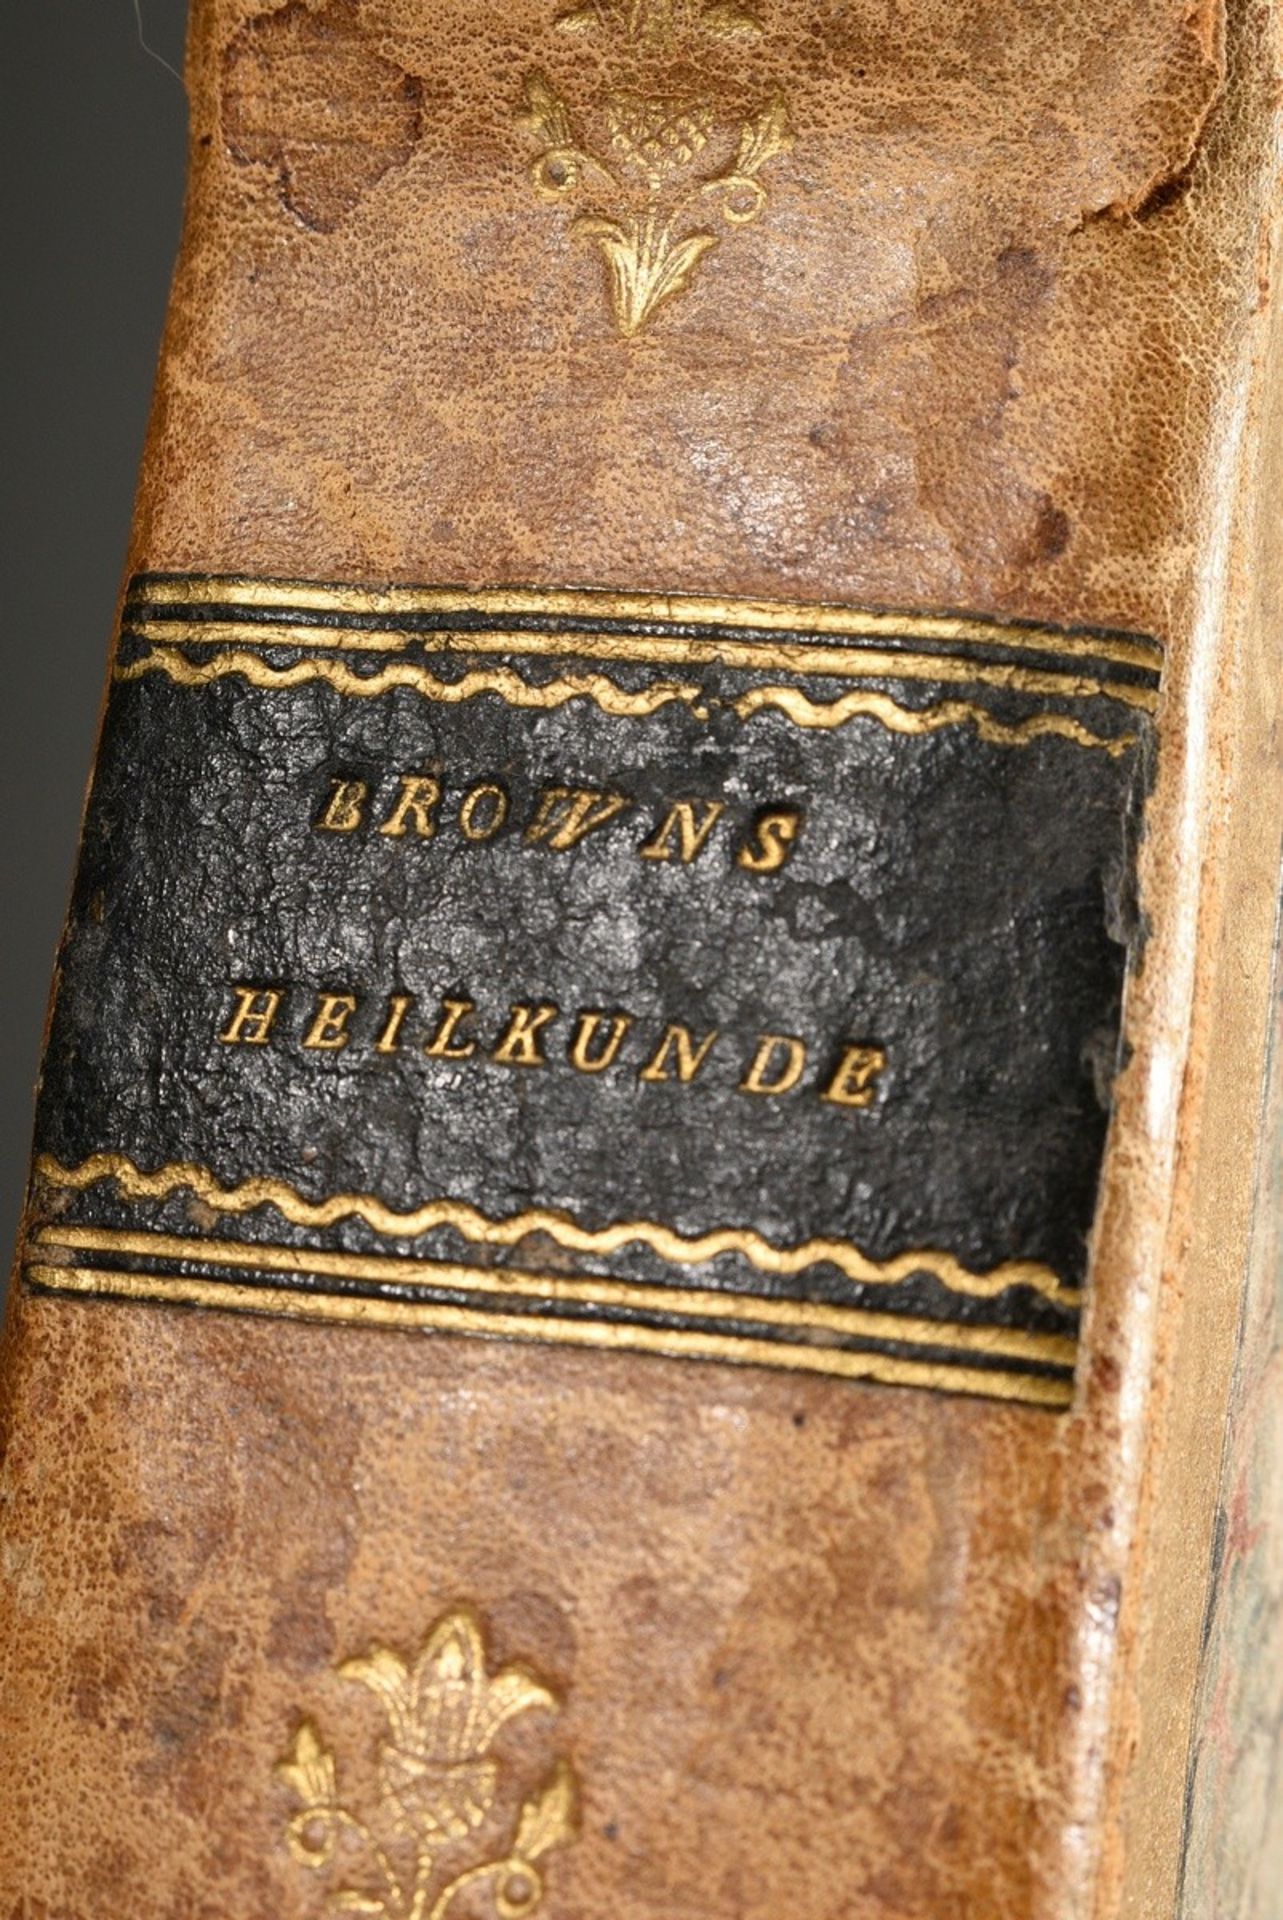 Volume "John Brown's System der Heilkunde", Vienna 1807, 3rd edition, half leather binding, 536 p., - Image 3 of 5